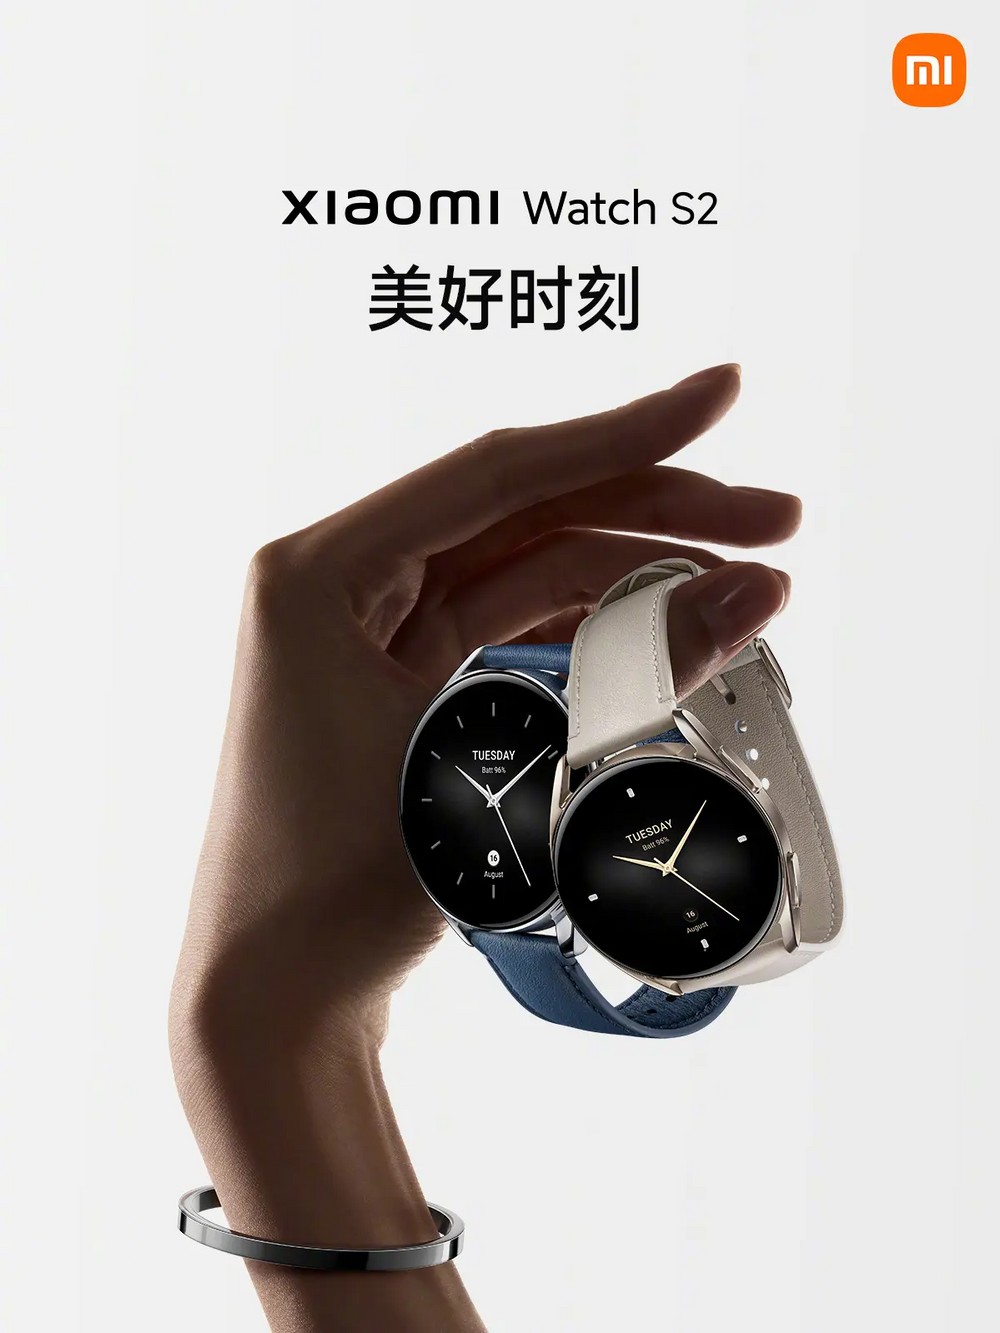 Nuovi Xiaomi Watch S2 ufficiali | Caratteristiche e prezzi